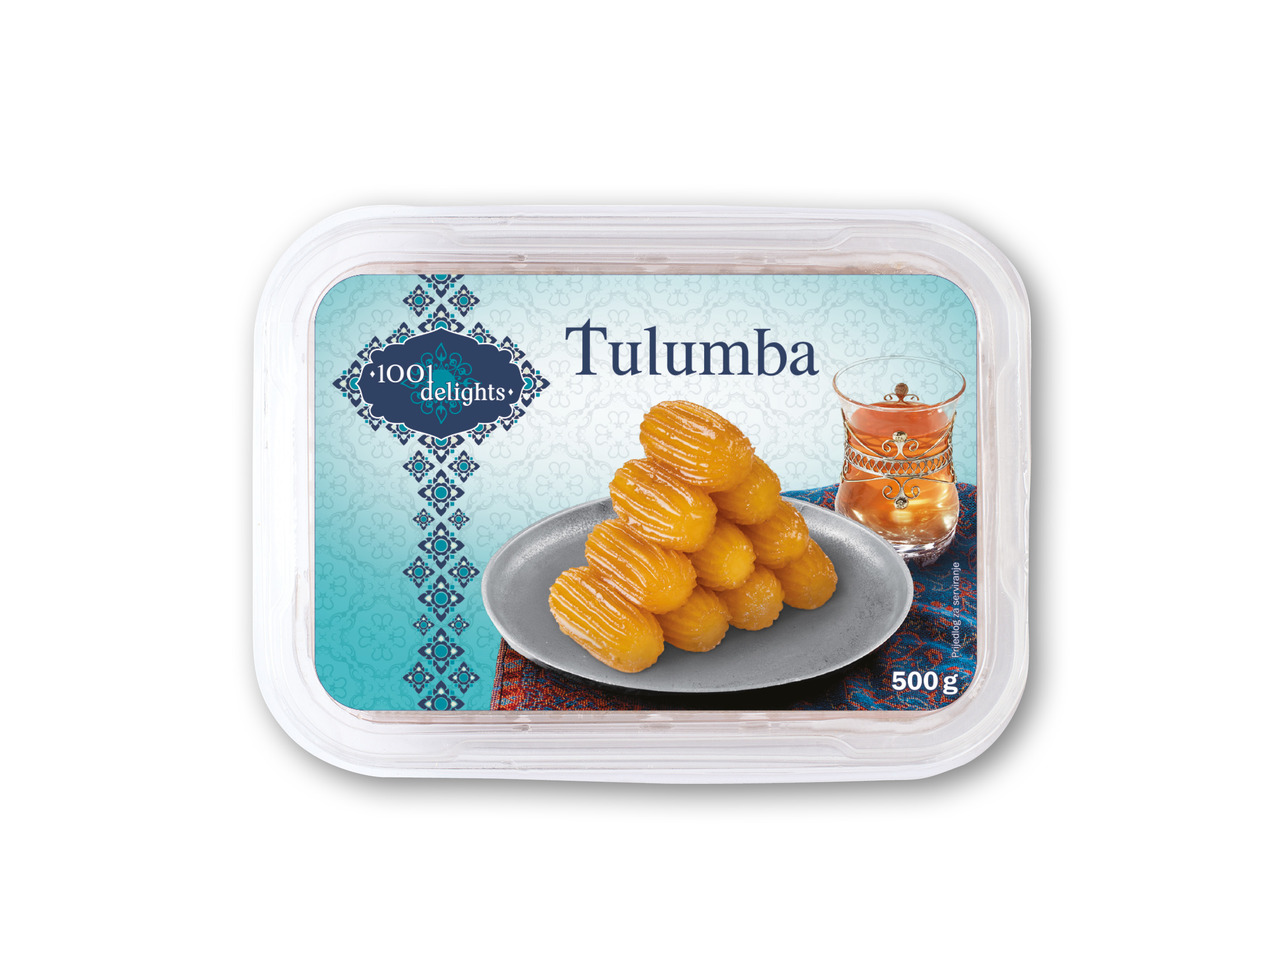 1001 DELIGHTS Tulumba